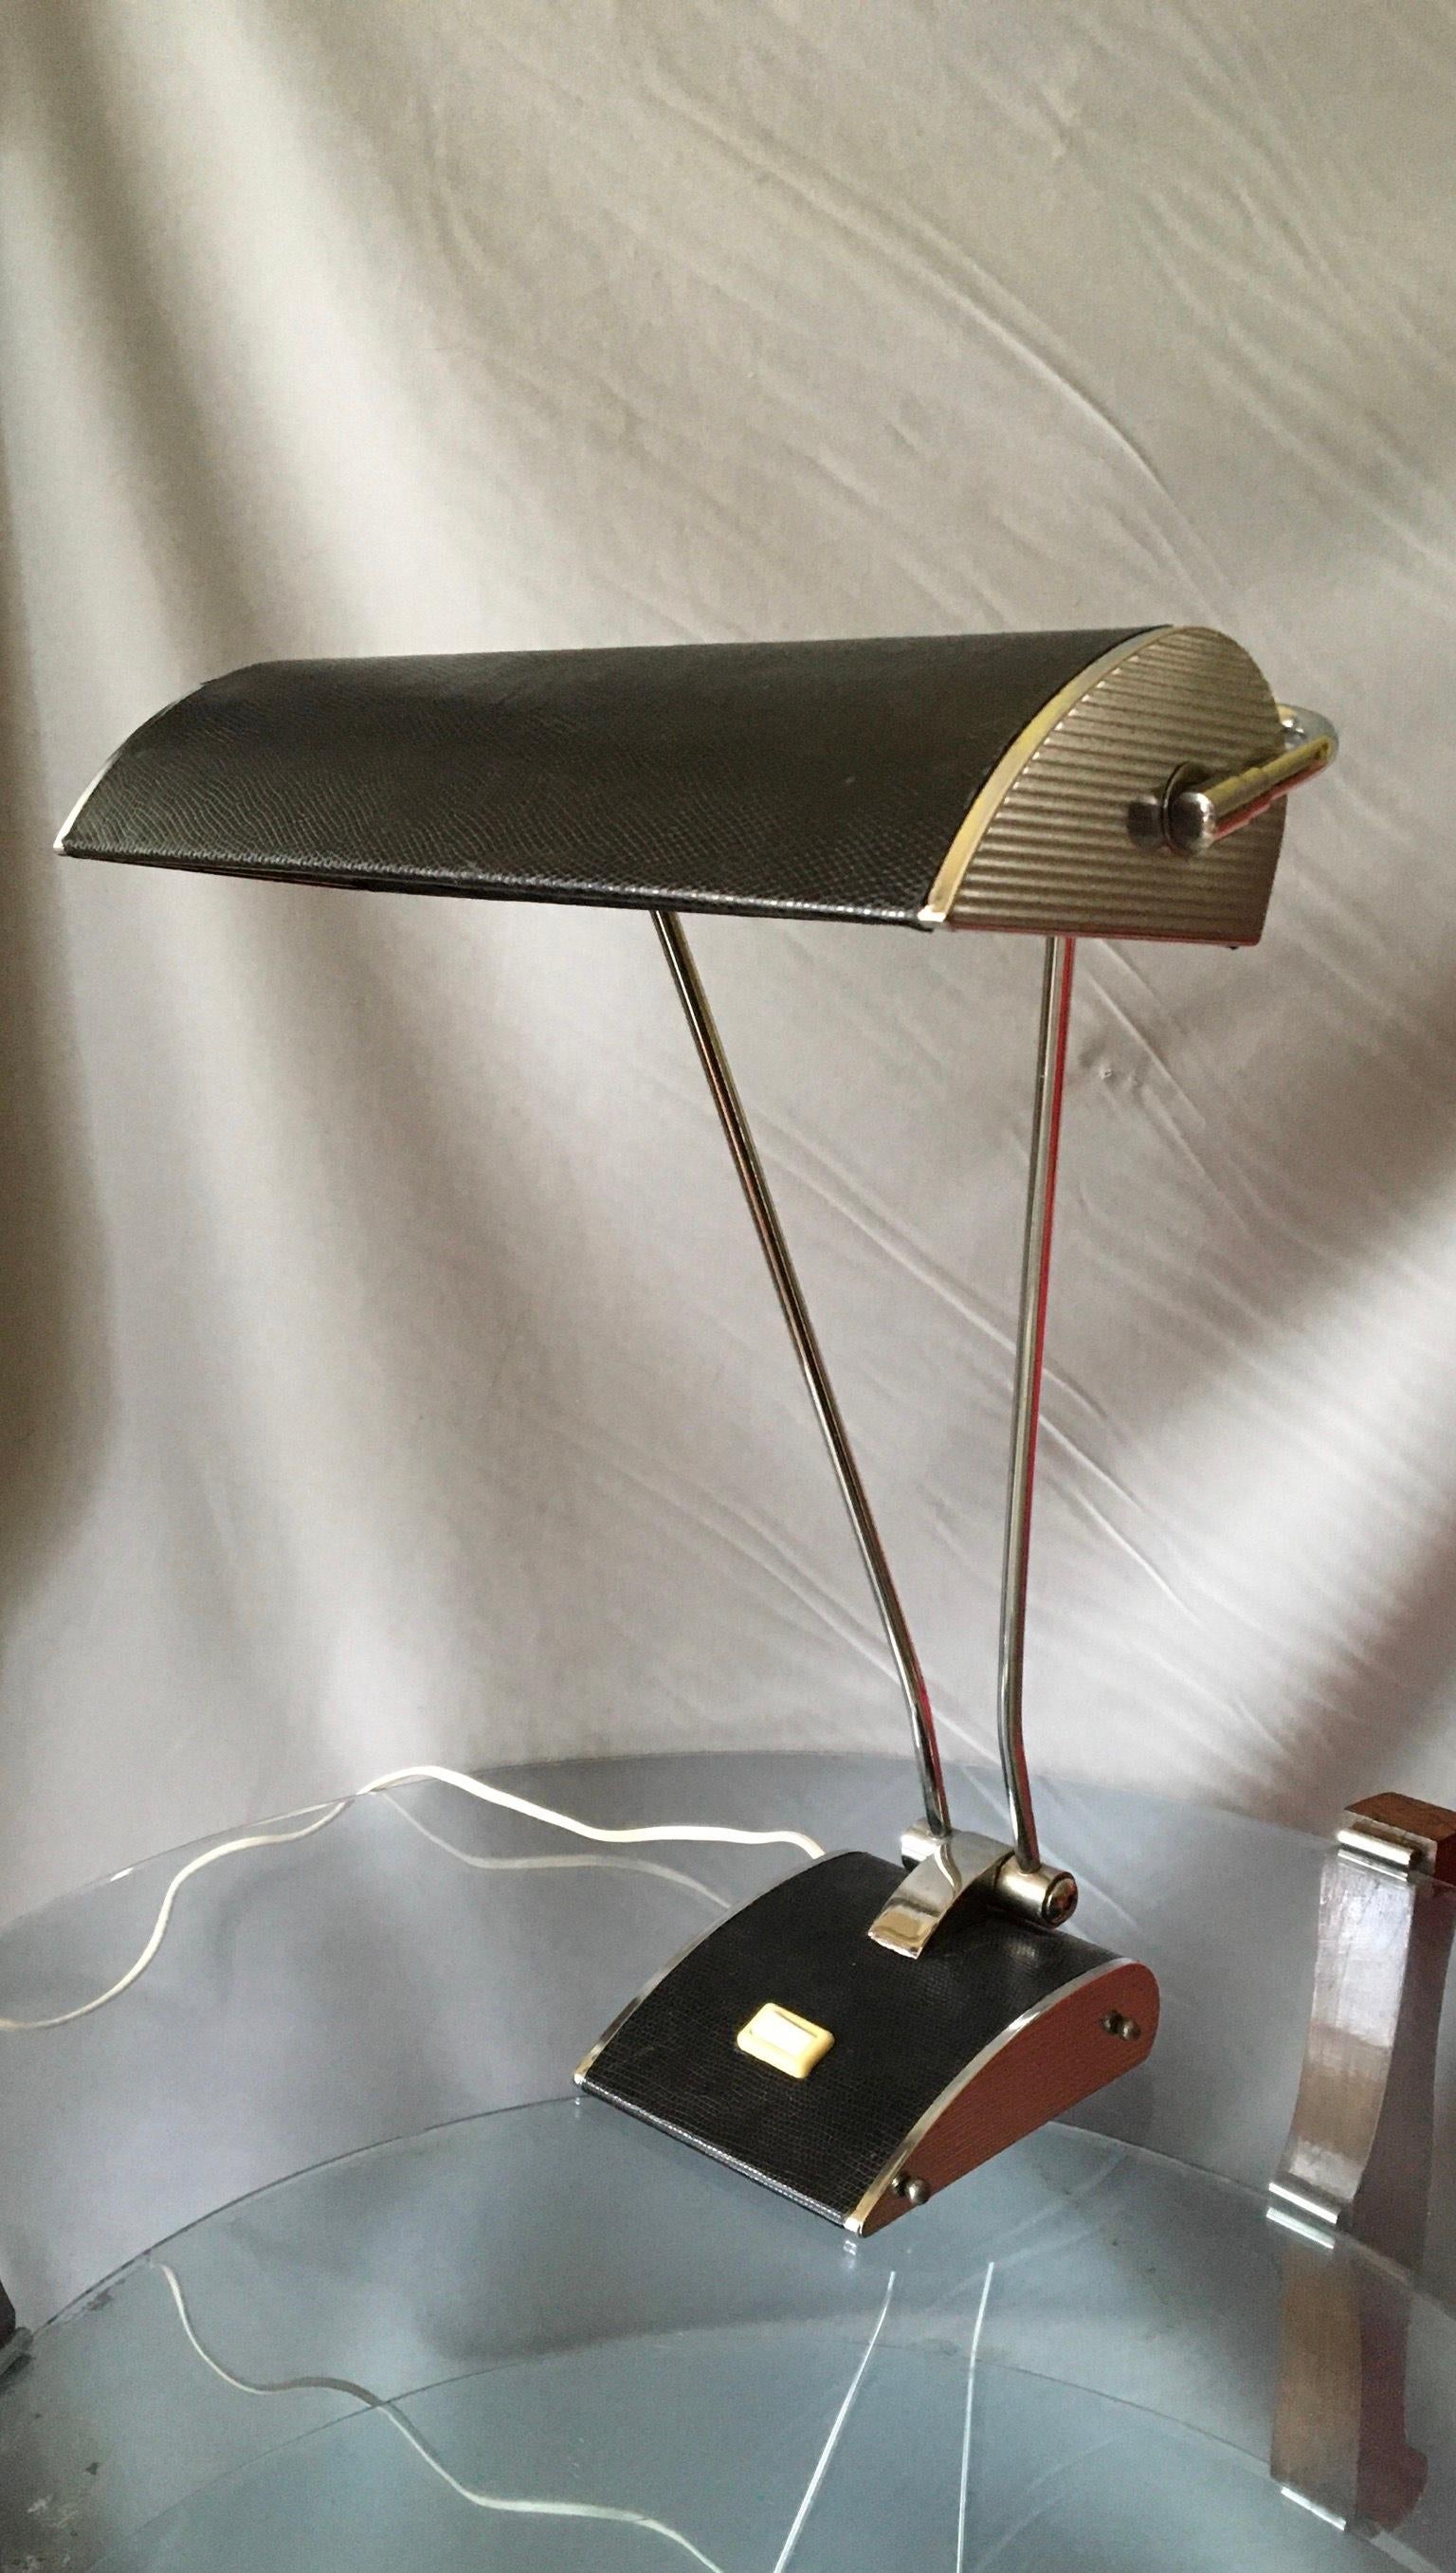 Très élégante lampe de table française des années 50, design/One, en métal chromé de style aviation et recouverte de lézard.
Le réflecteur peut se plier et pivoter pour un éclairage optimal.
La lampe est en excellent état, les parties électriques